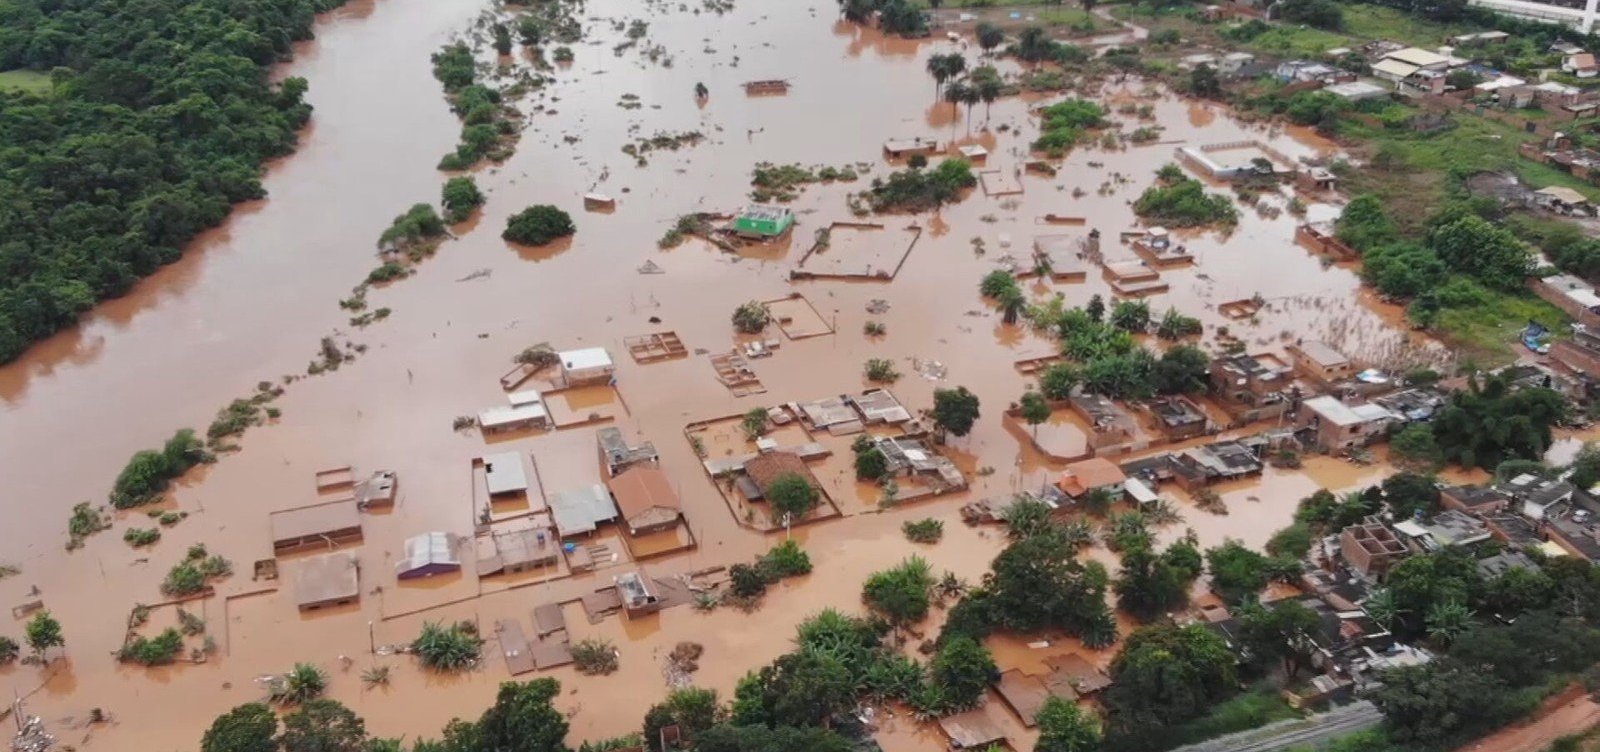 Mais de 100 cidades estão em situação de emergência devido às chuvas em Minas Gerais